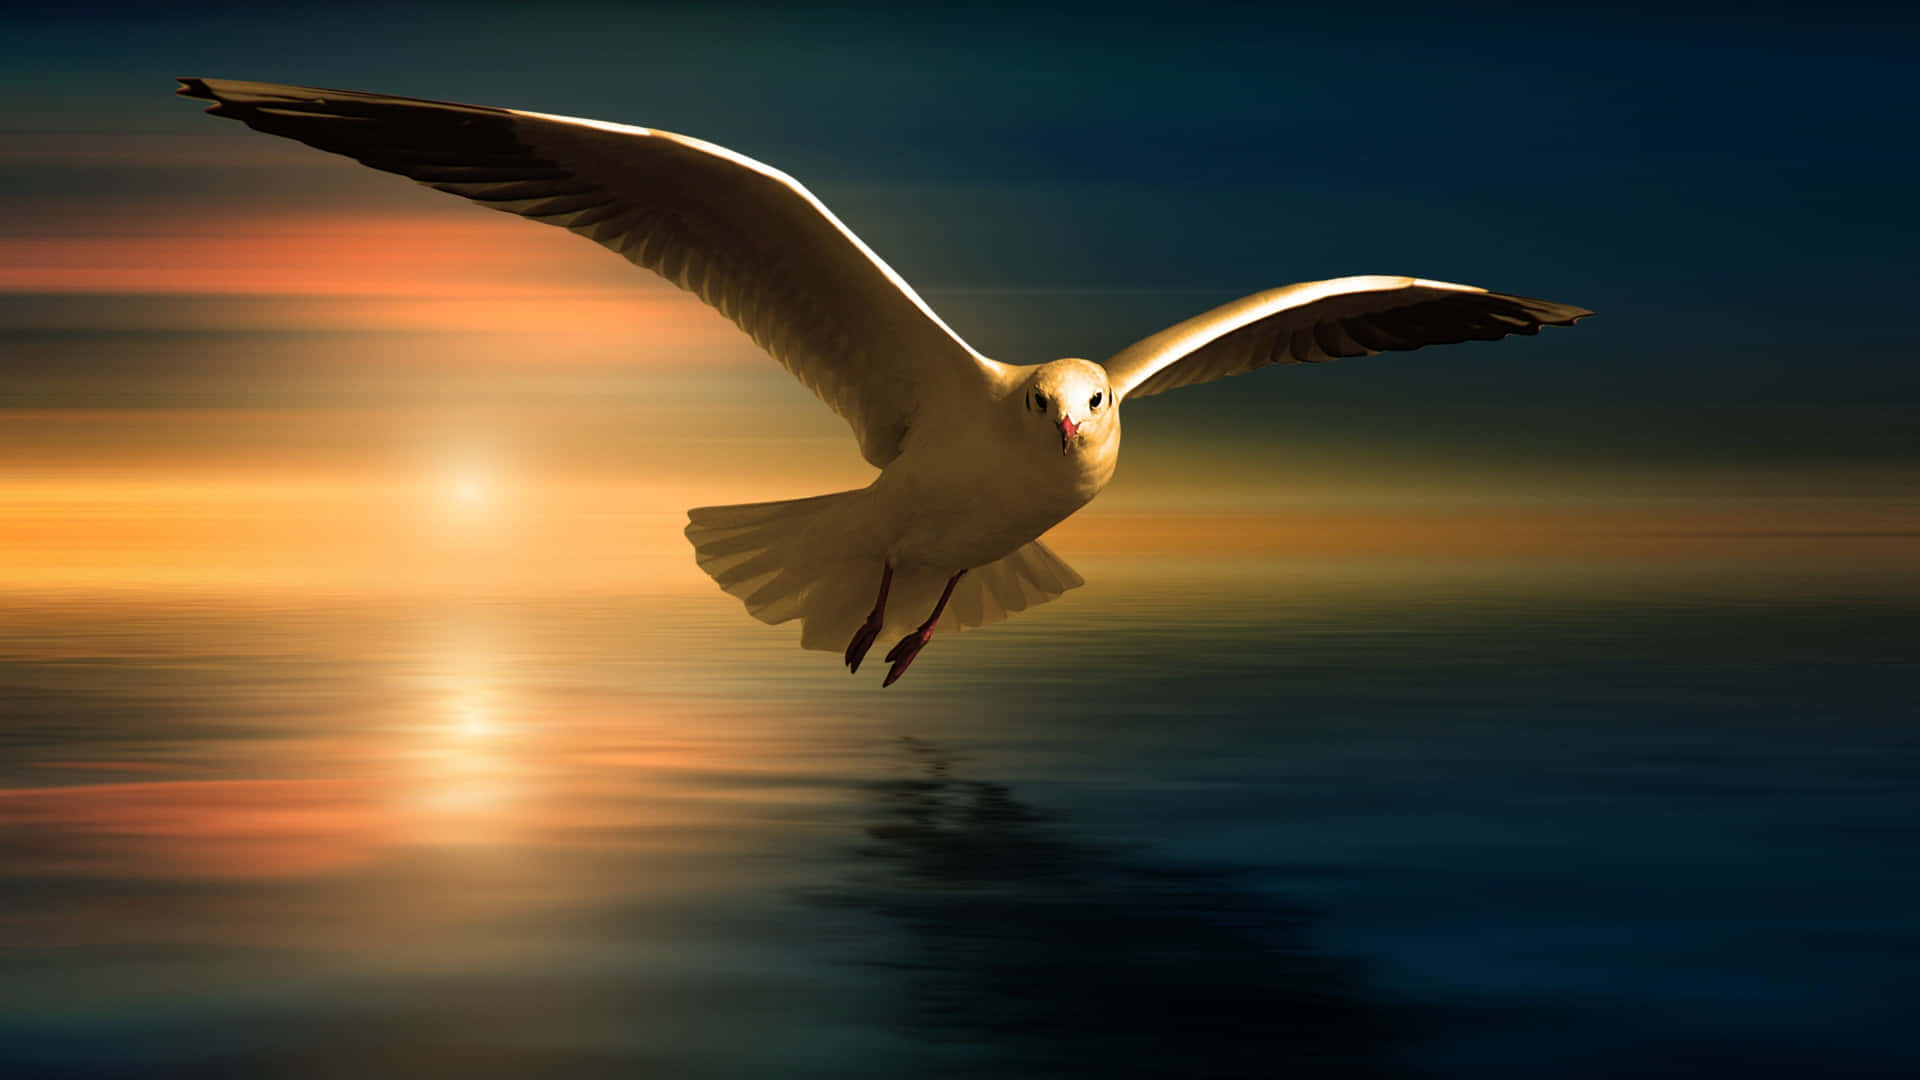 Graceful Seagull In Flight